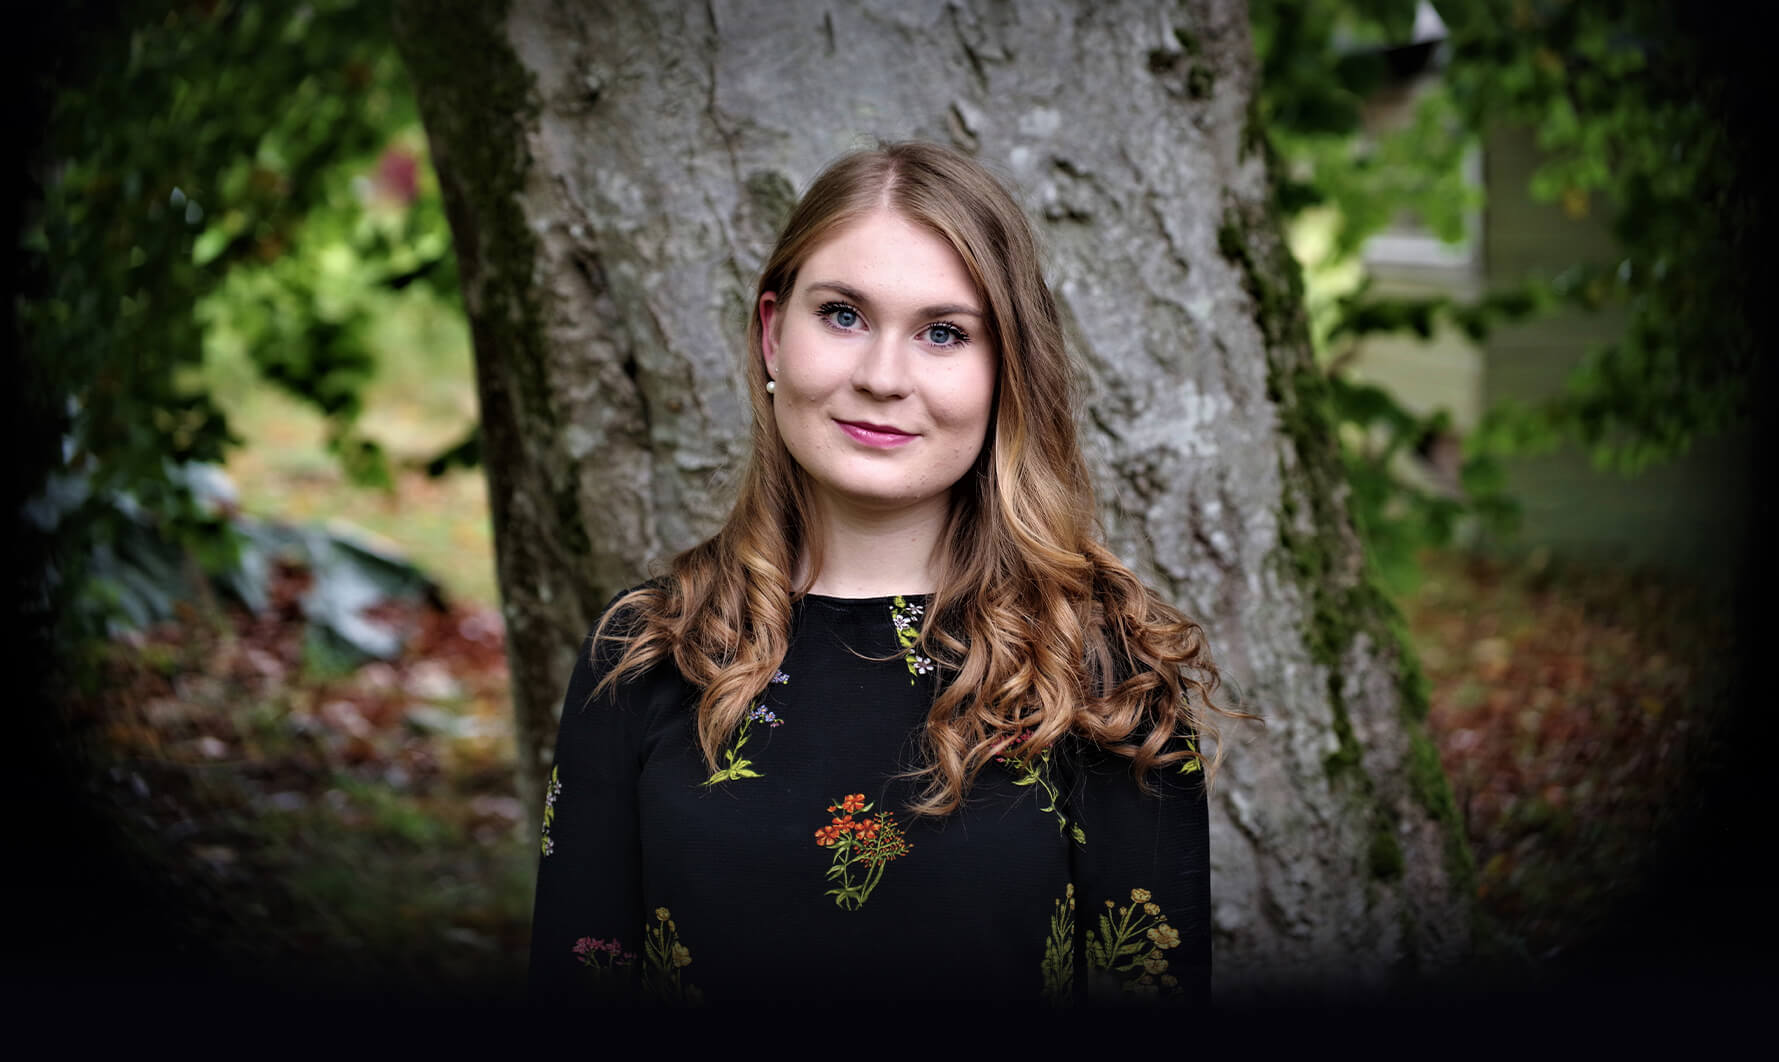 Karolina Bengtsson, soprano, Suecia - Canciones desde la Aurora Boreal